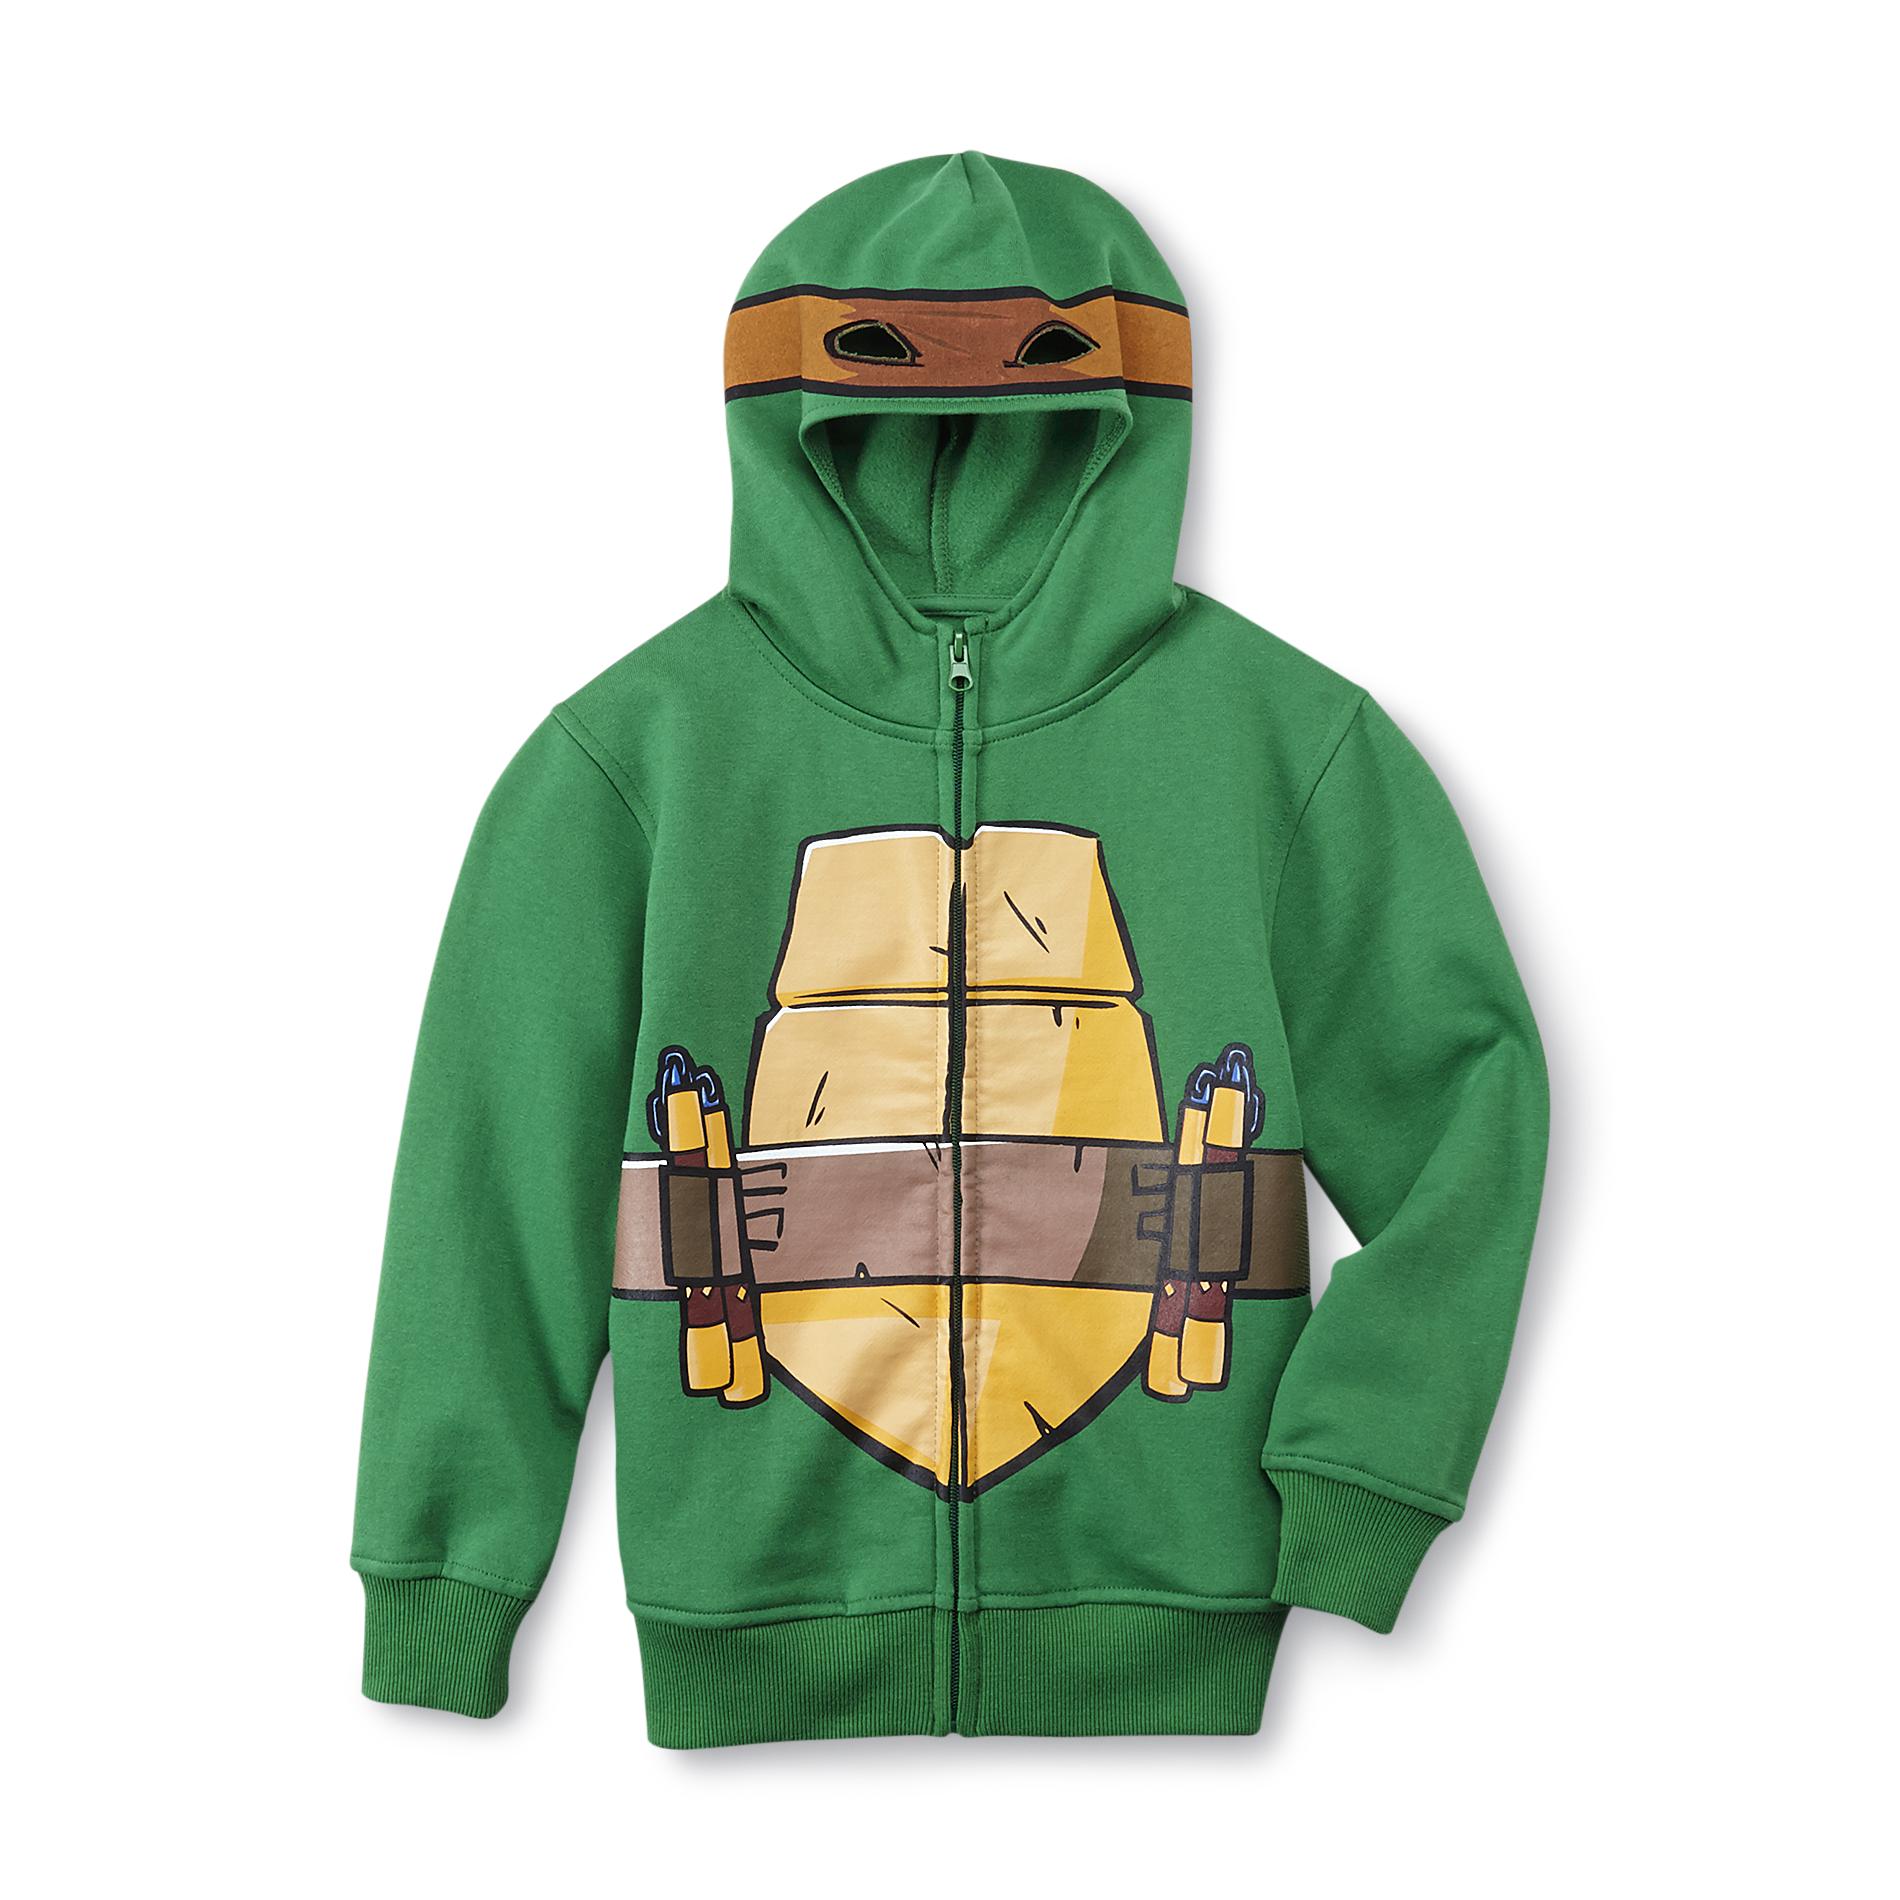 Nickelodeon Teenage Mutant Ninja Turtles Boy's Graphic Hoodie Jacket